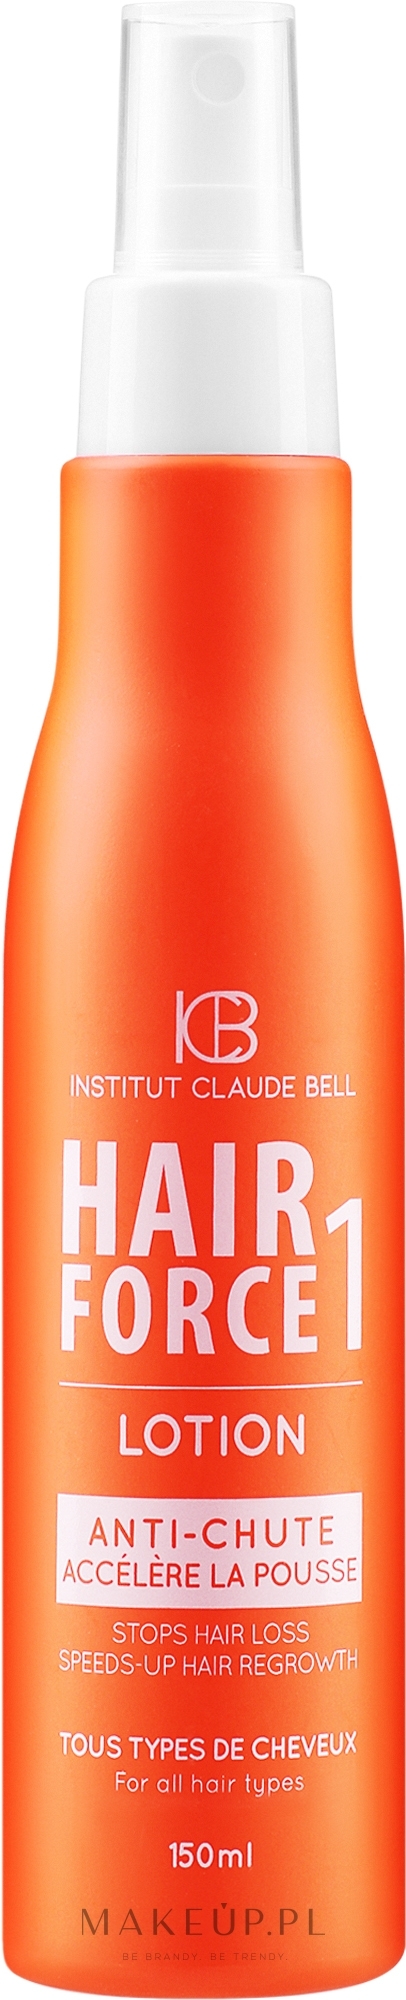 Lotion przeciw wypadaniu włosów - Institut Claude Bell Hair Force One Lotion — Zdjęcie 150 ml